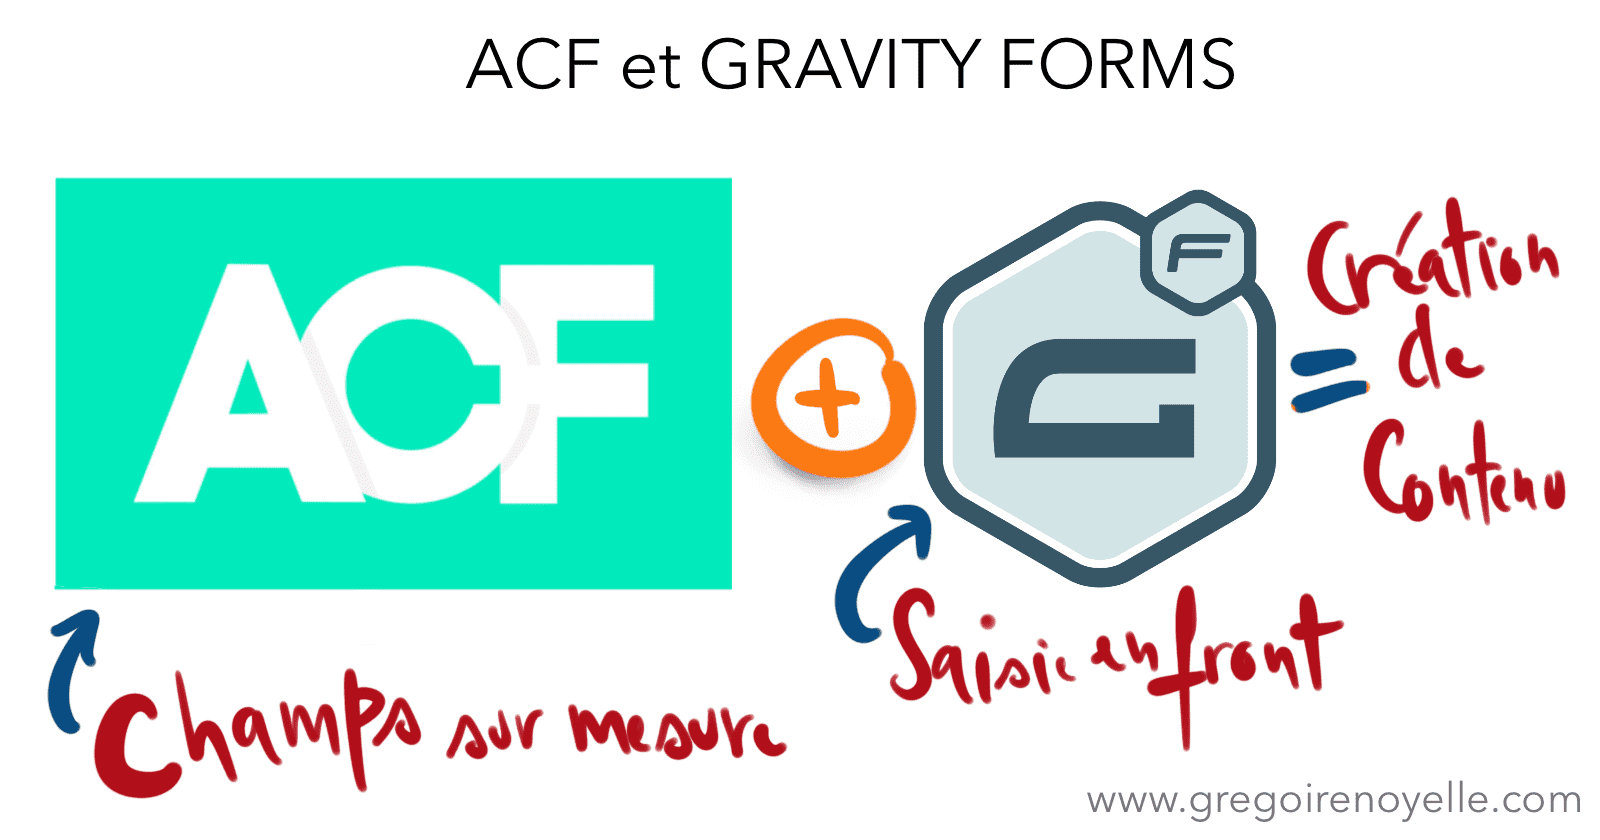 Créer des contenus WordPress sur mesure avec Gravity Forms et ACF